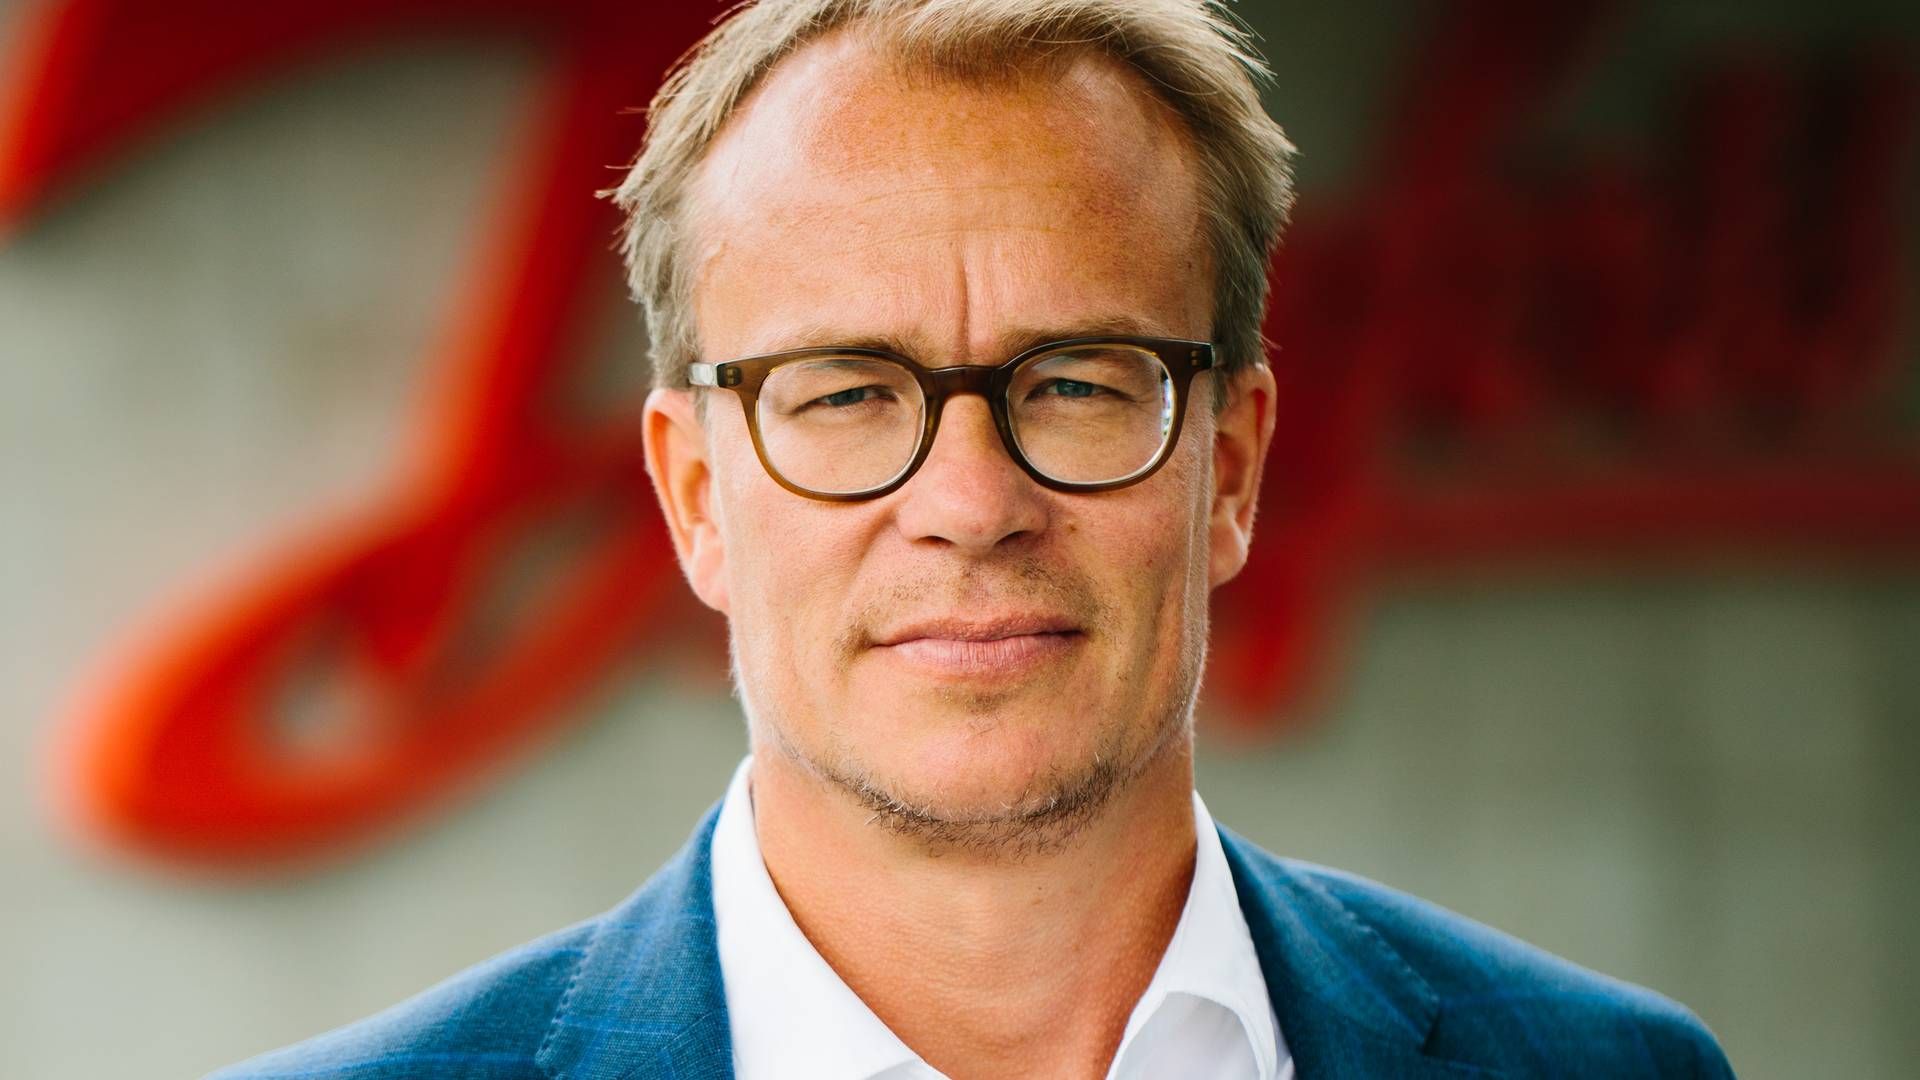 Martin Rossen er indtrådt i bestyrelsen for Pharma Equity Group. | Foto: Danfoss/pr